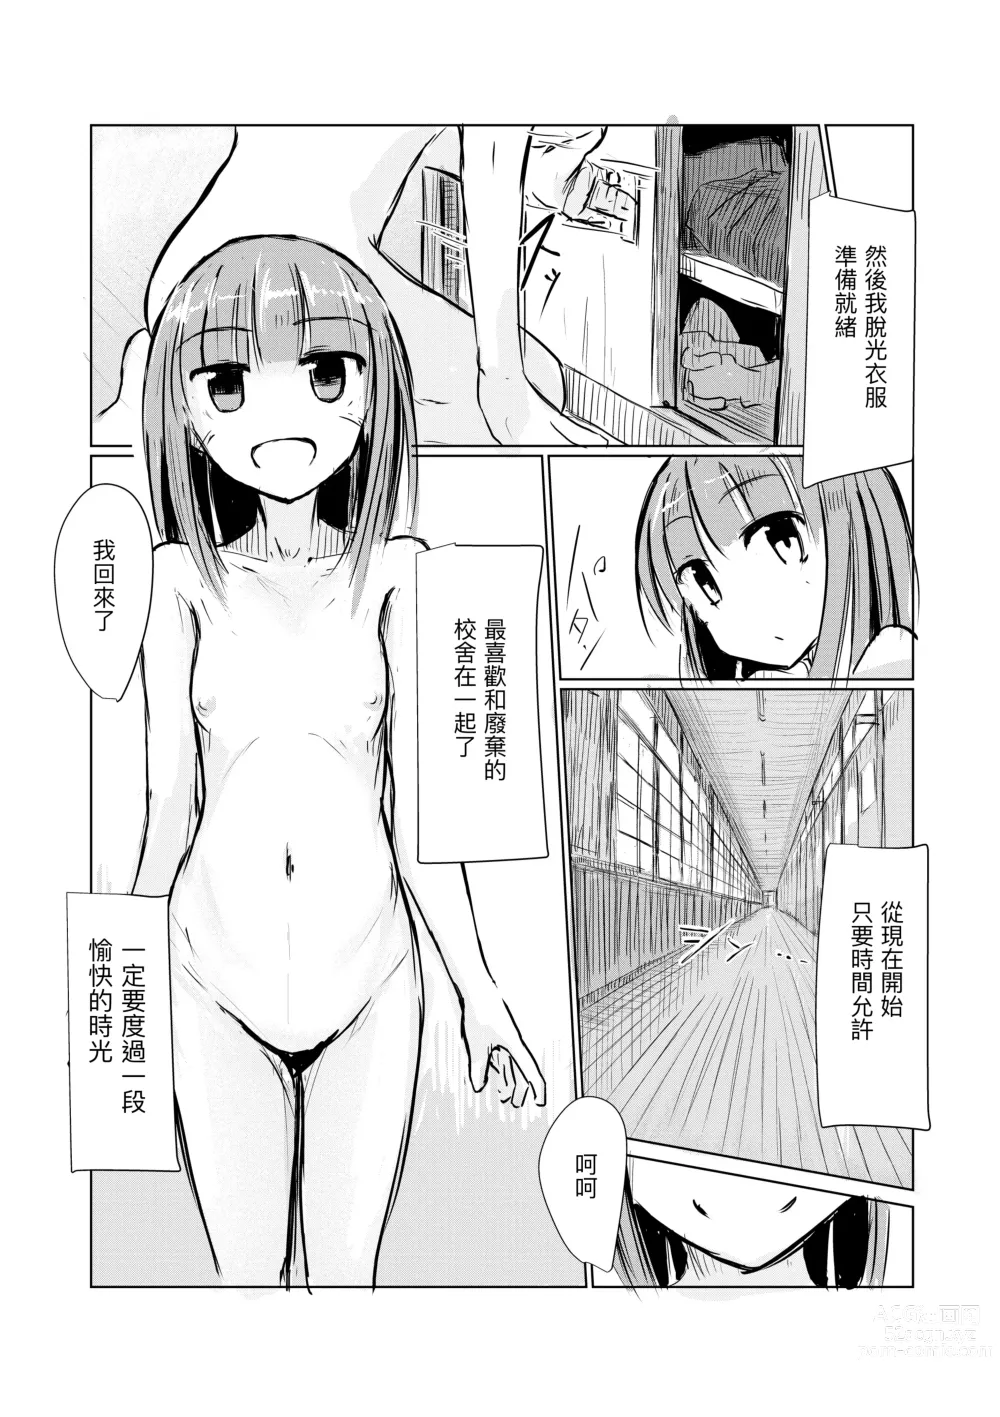 Page 6 of doujinshi Shoujo to Haikousha II